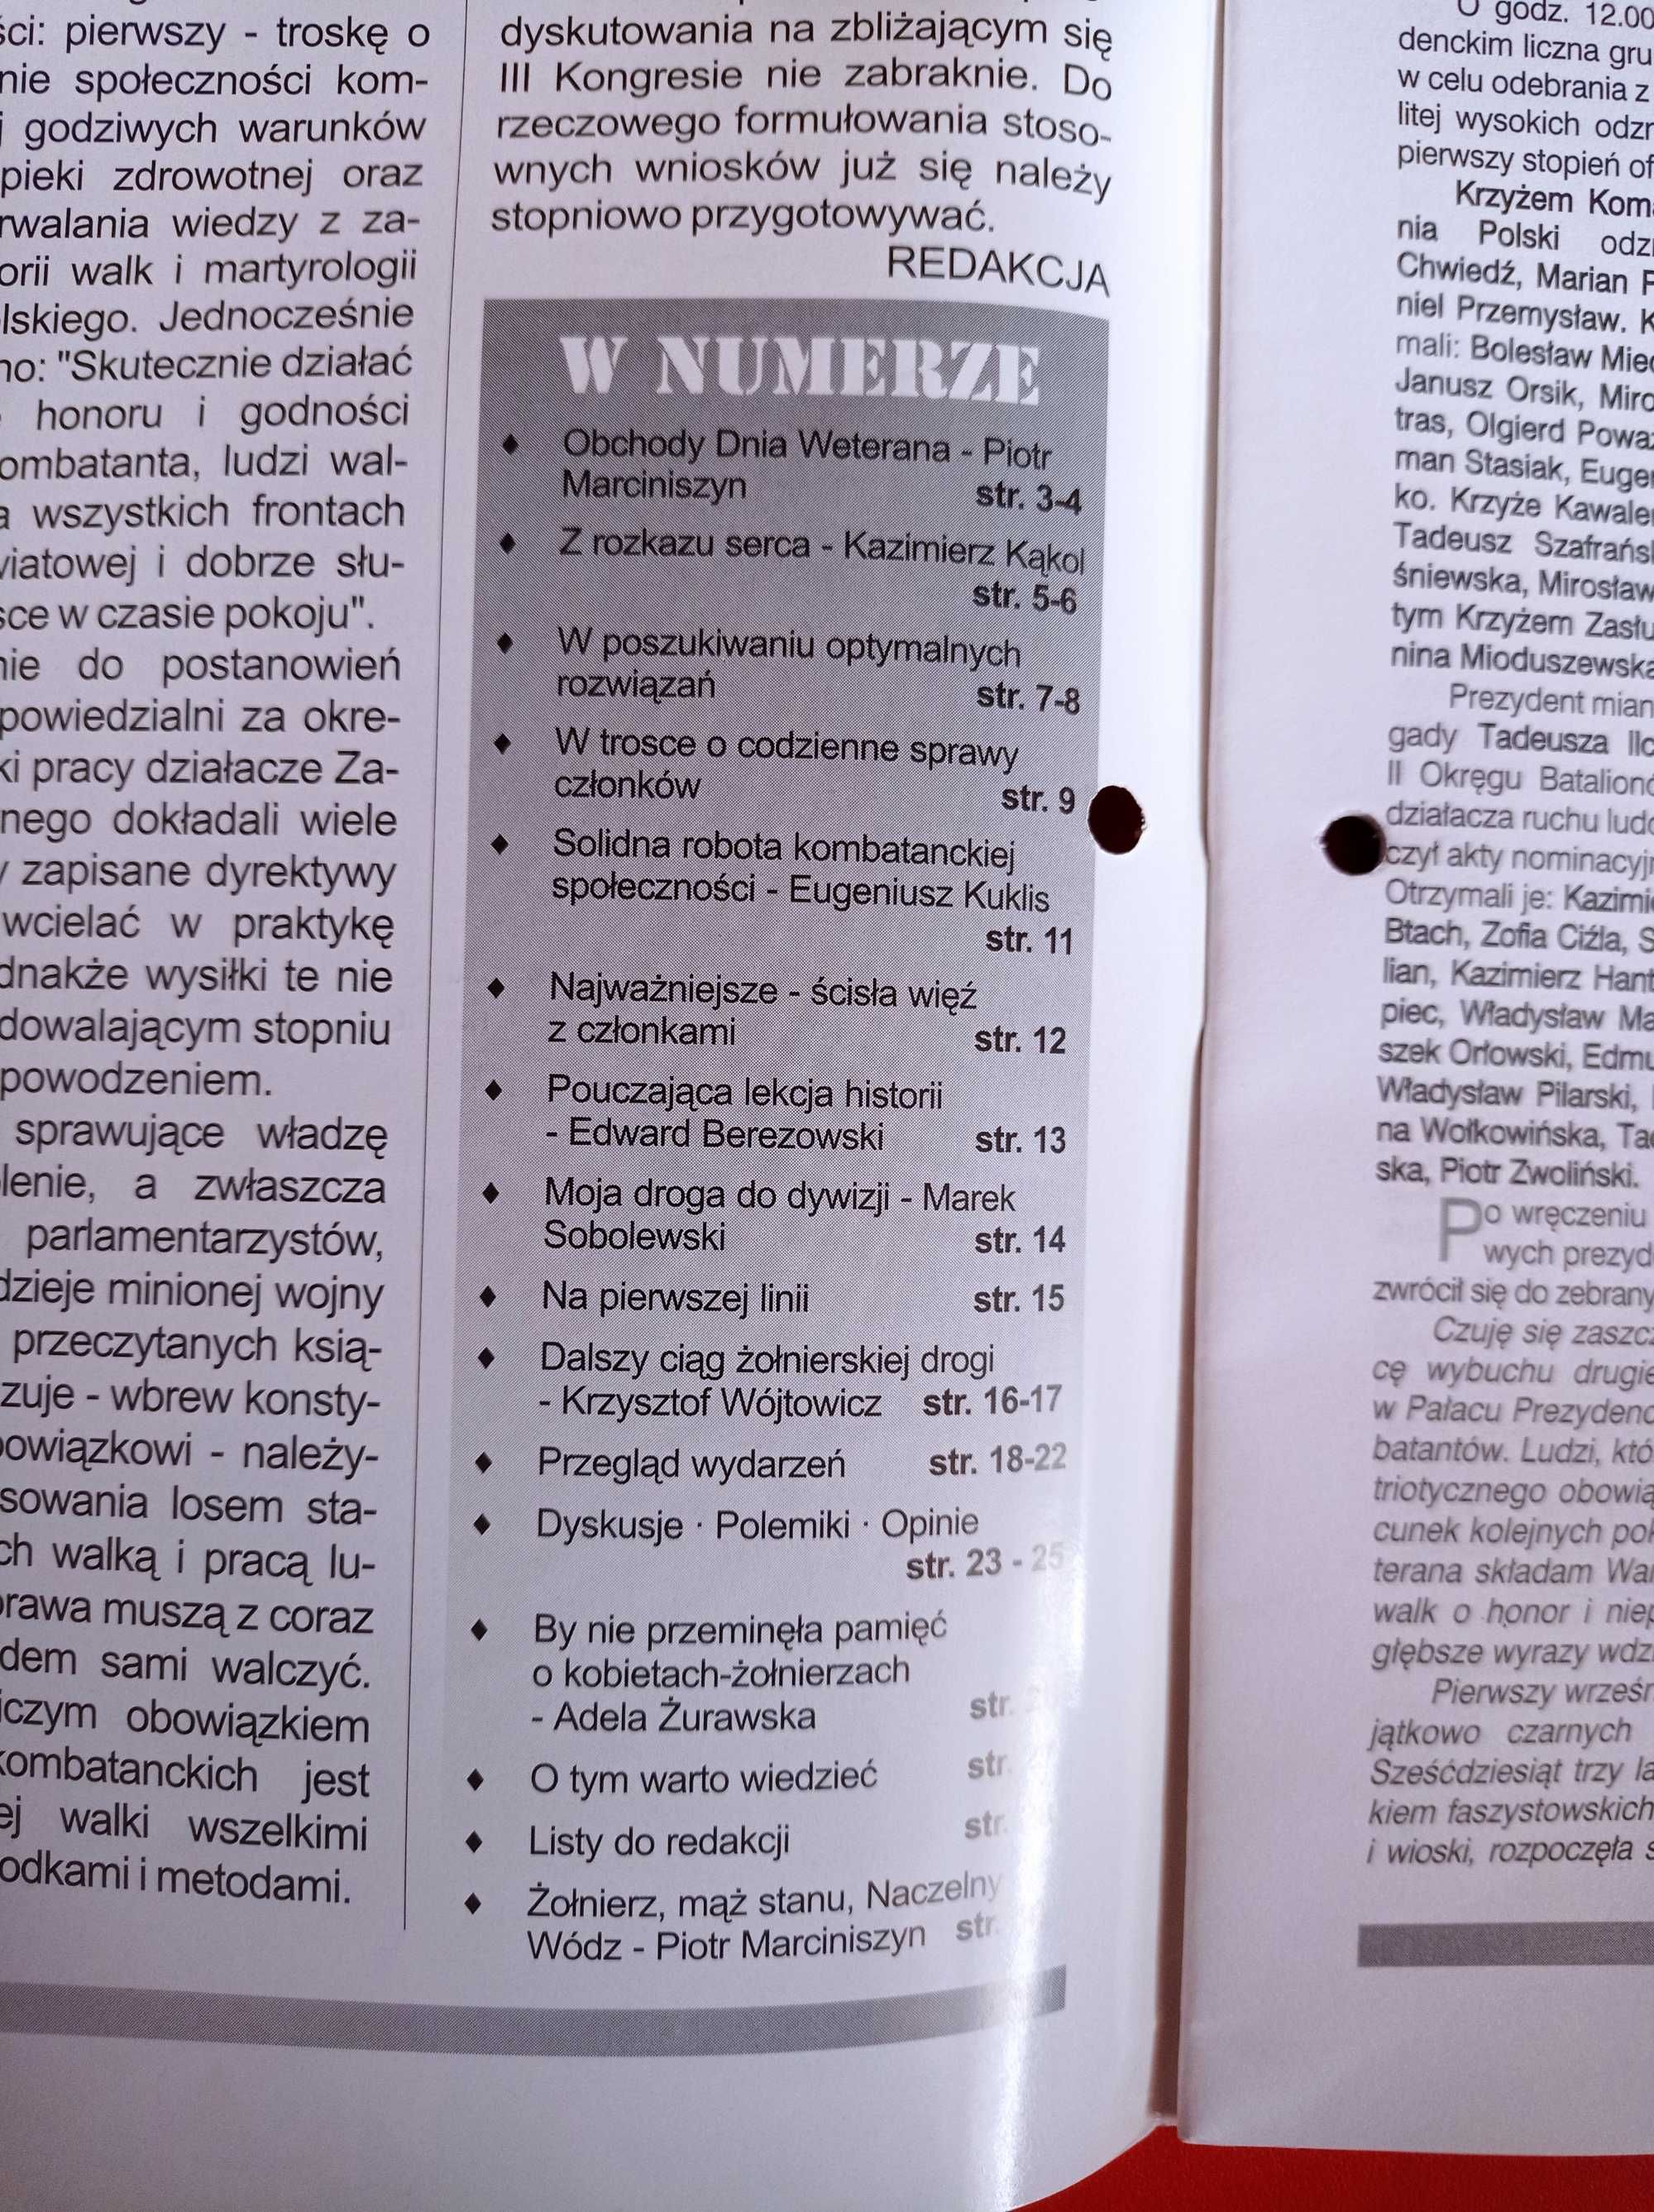 Polsce wierni nr 10/2002, październik 2002